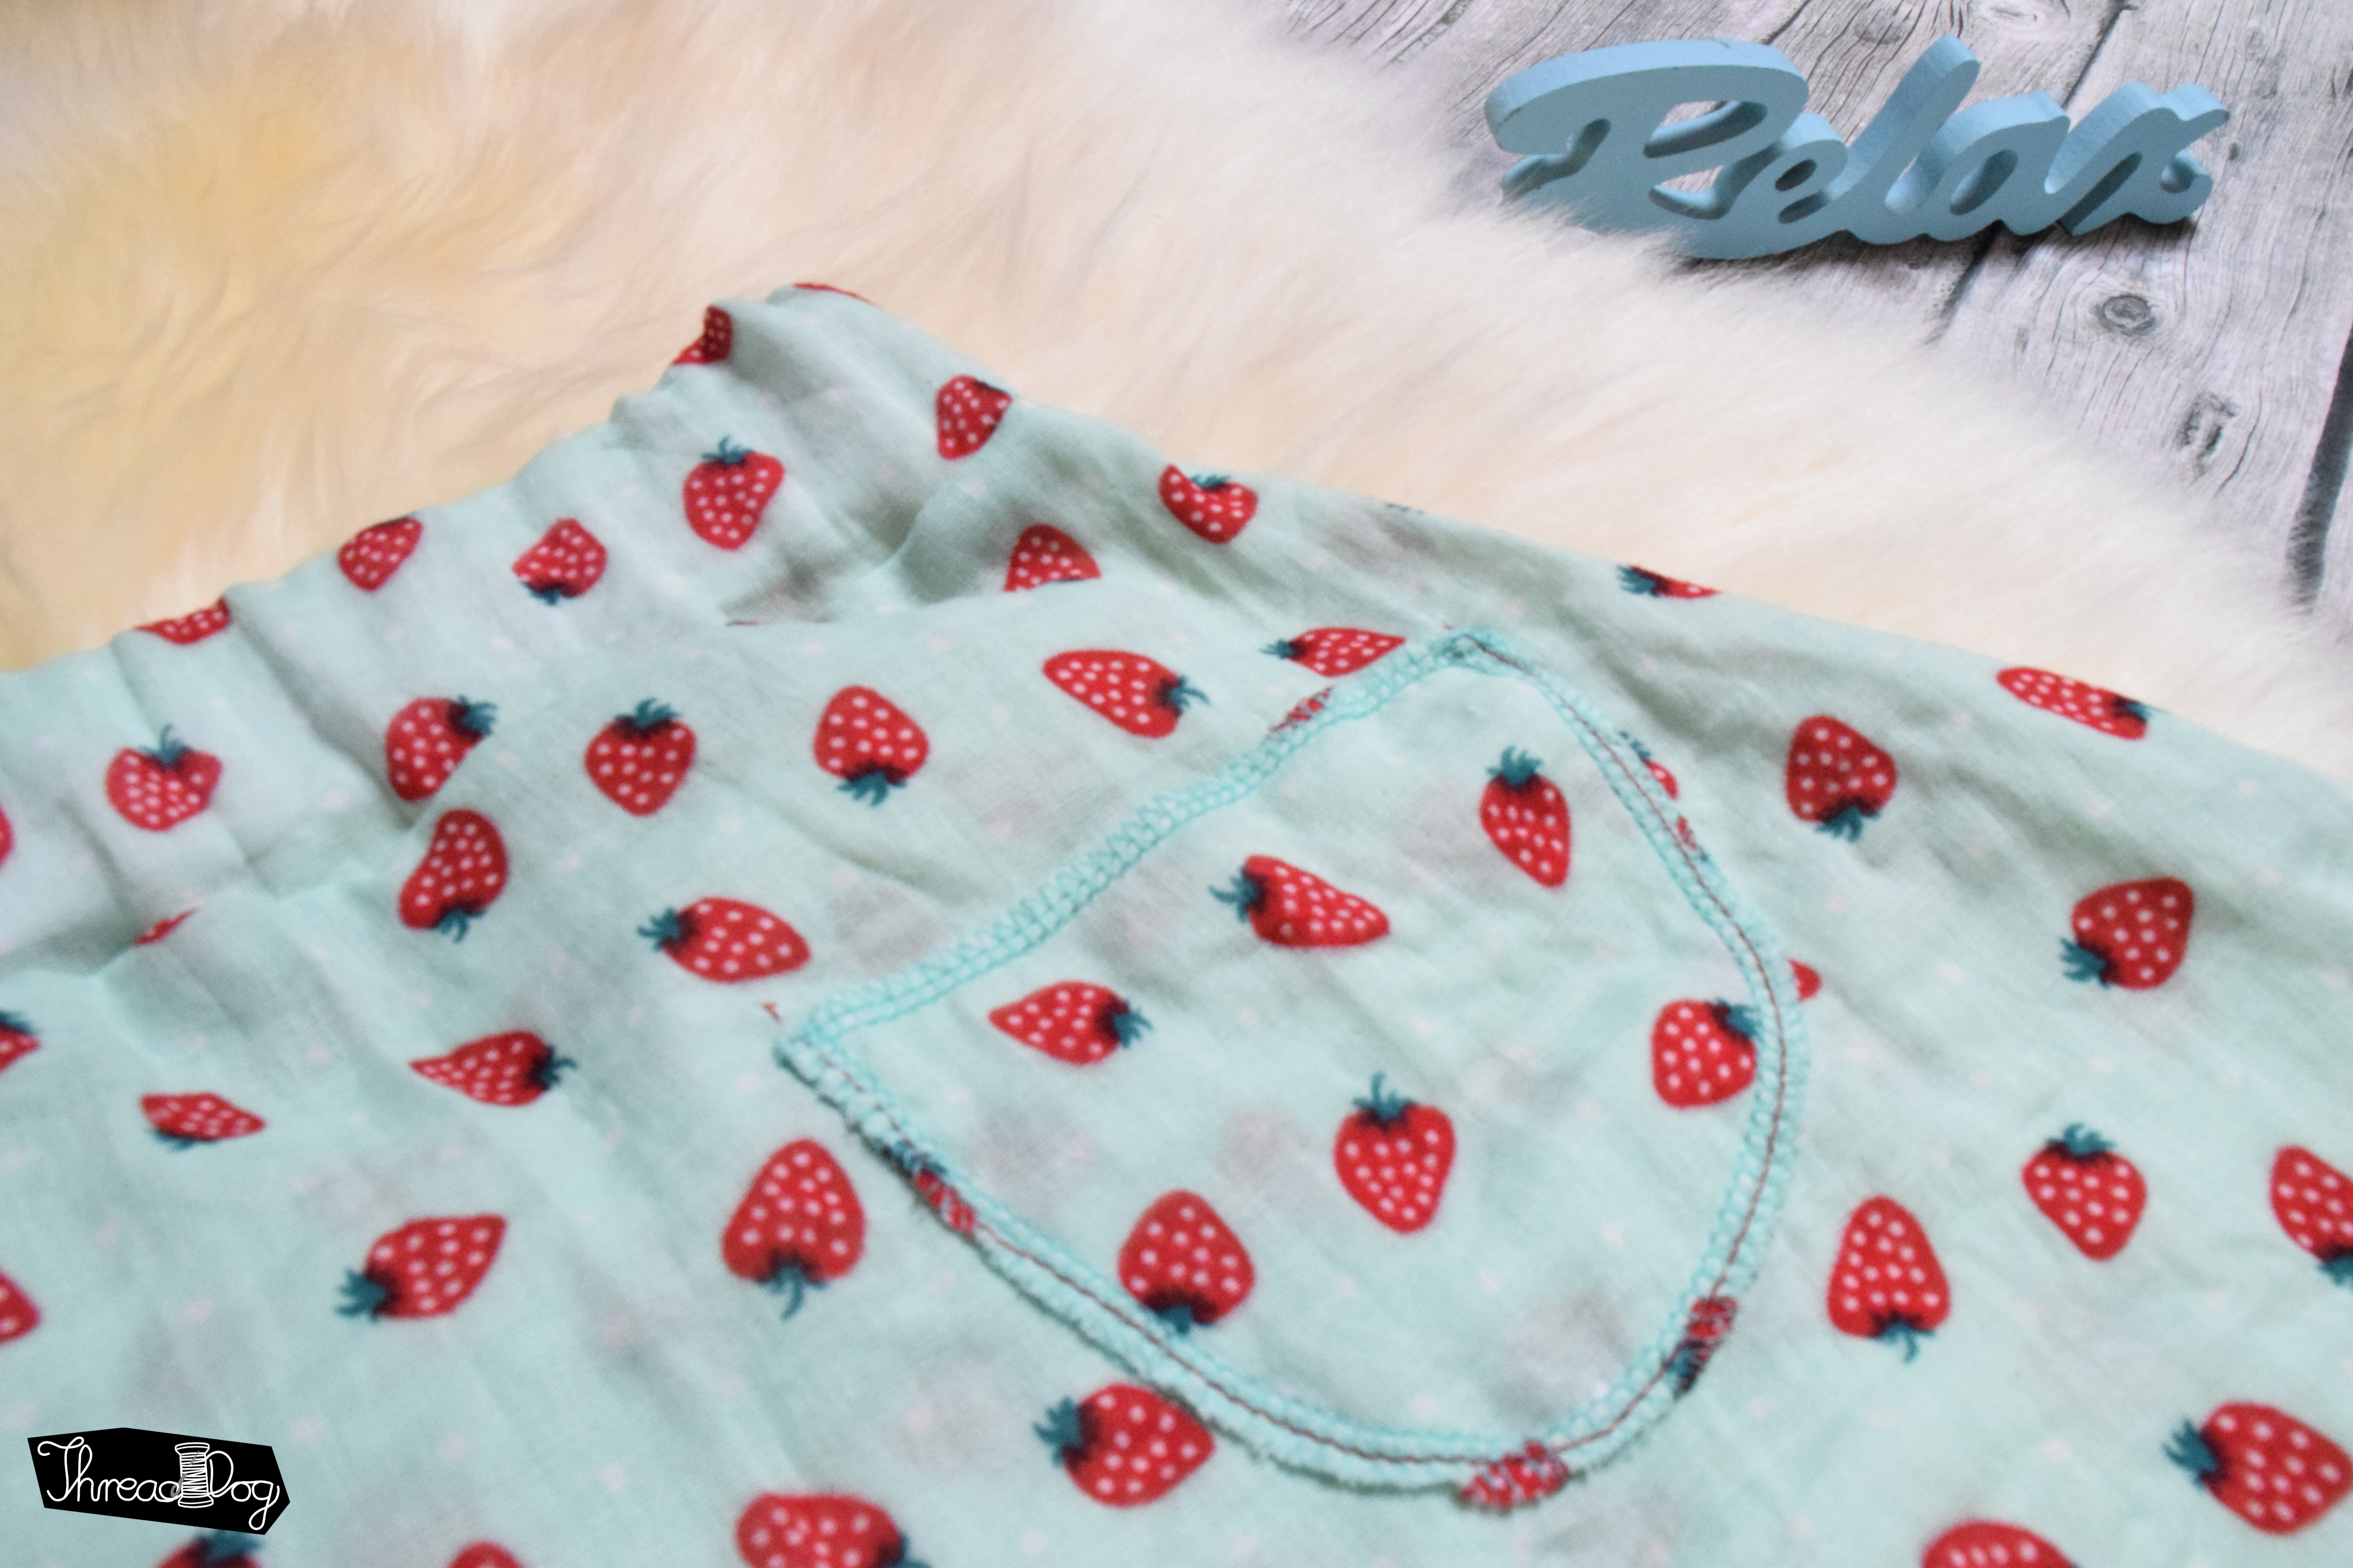 grüne Musselin-Hose mit Erdbeeren. Detailansicht einer Gesäßtasche.